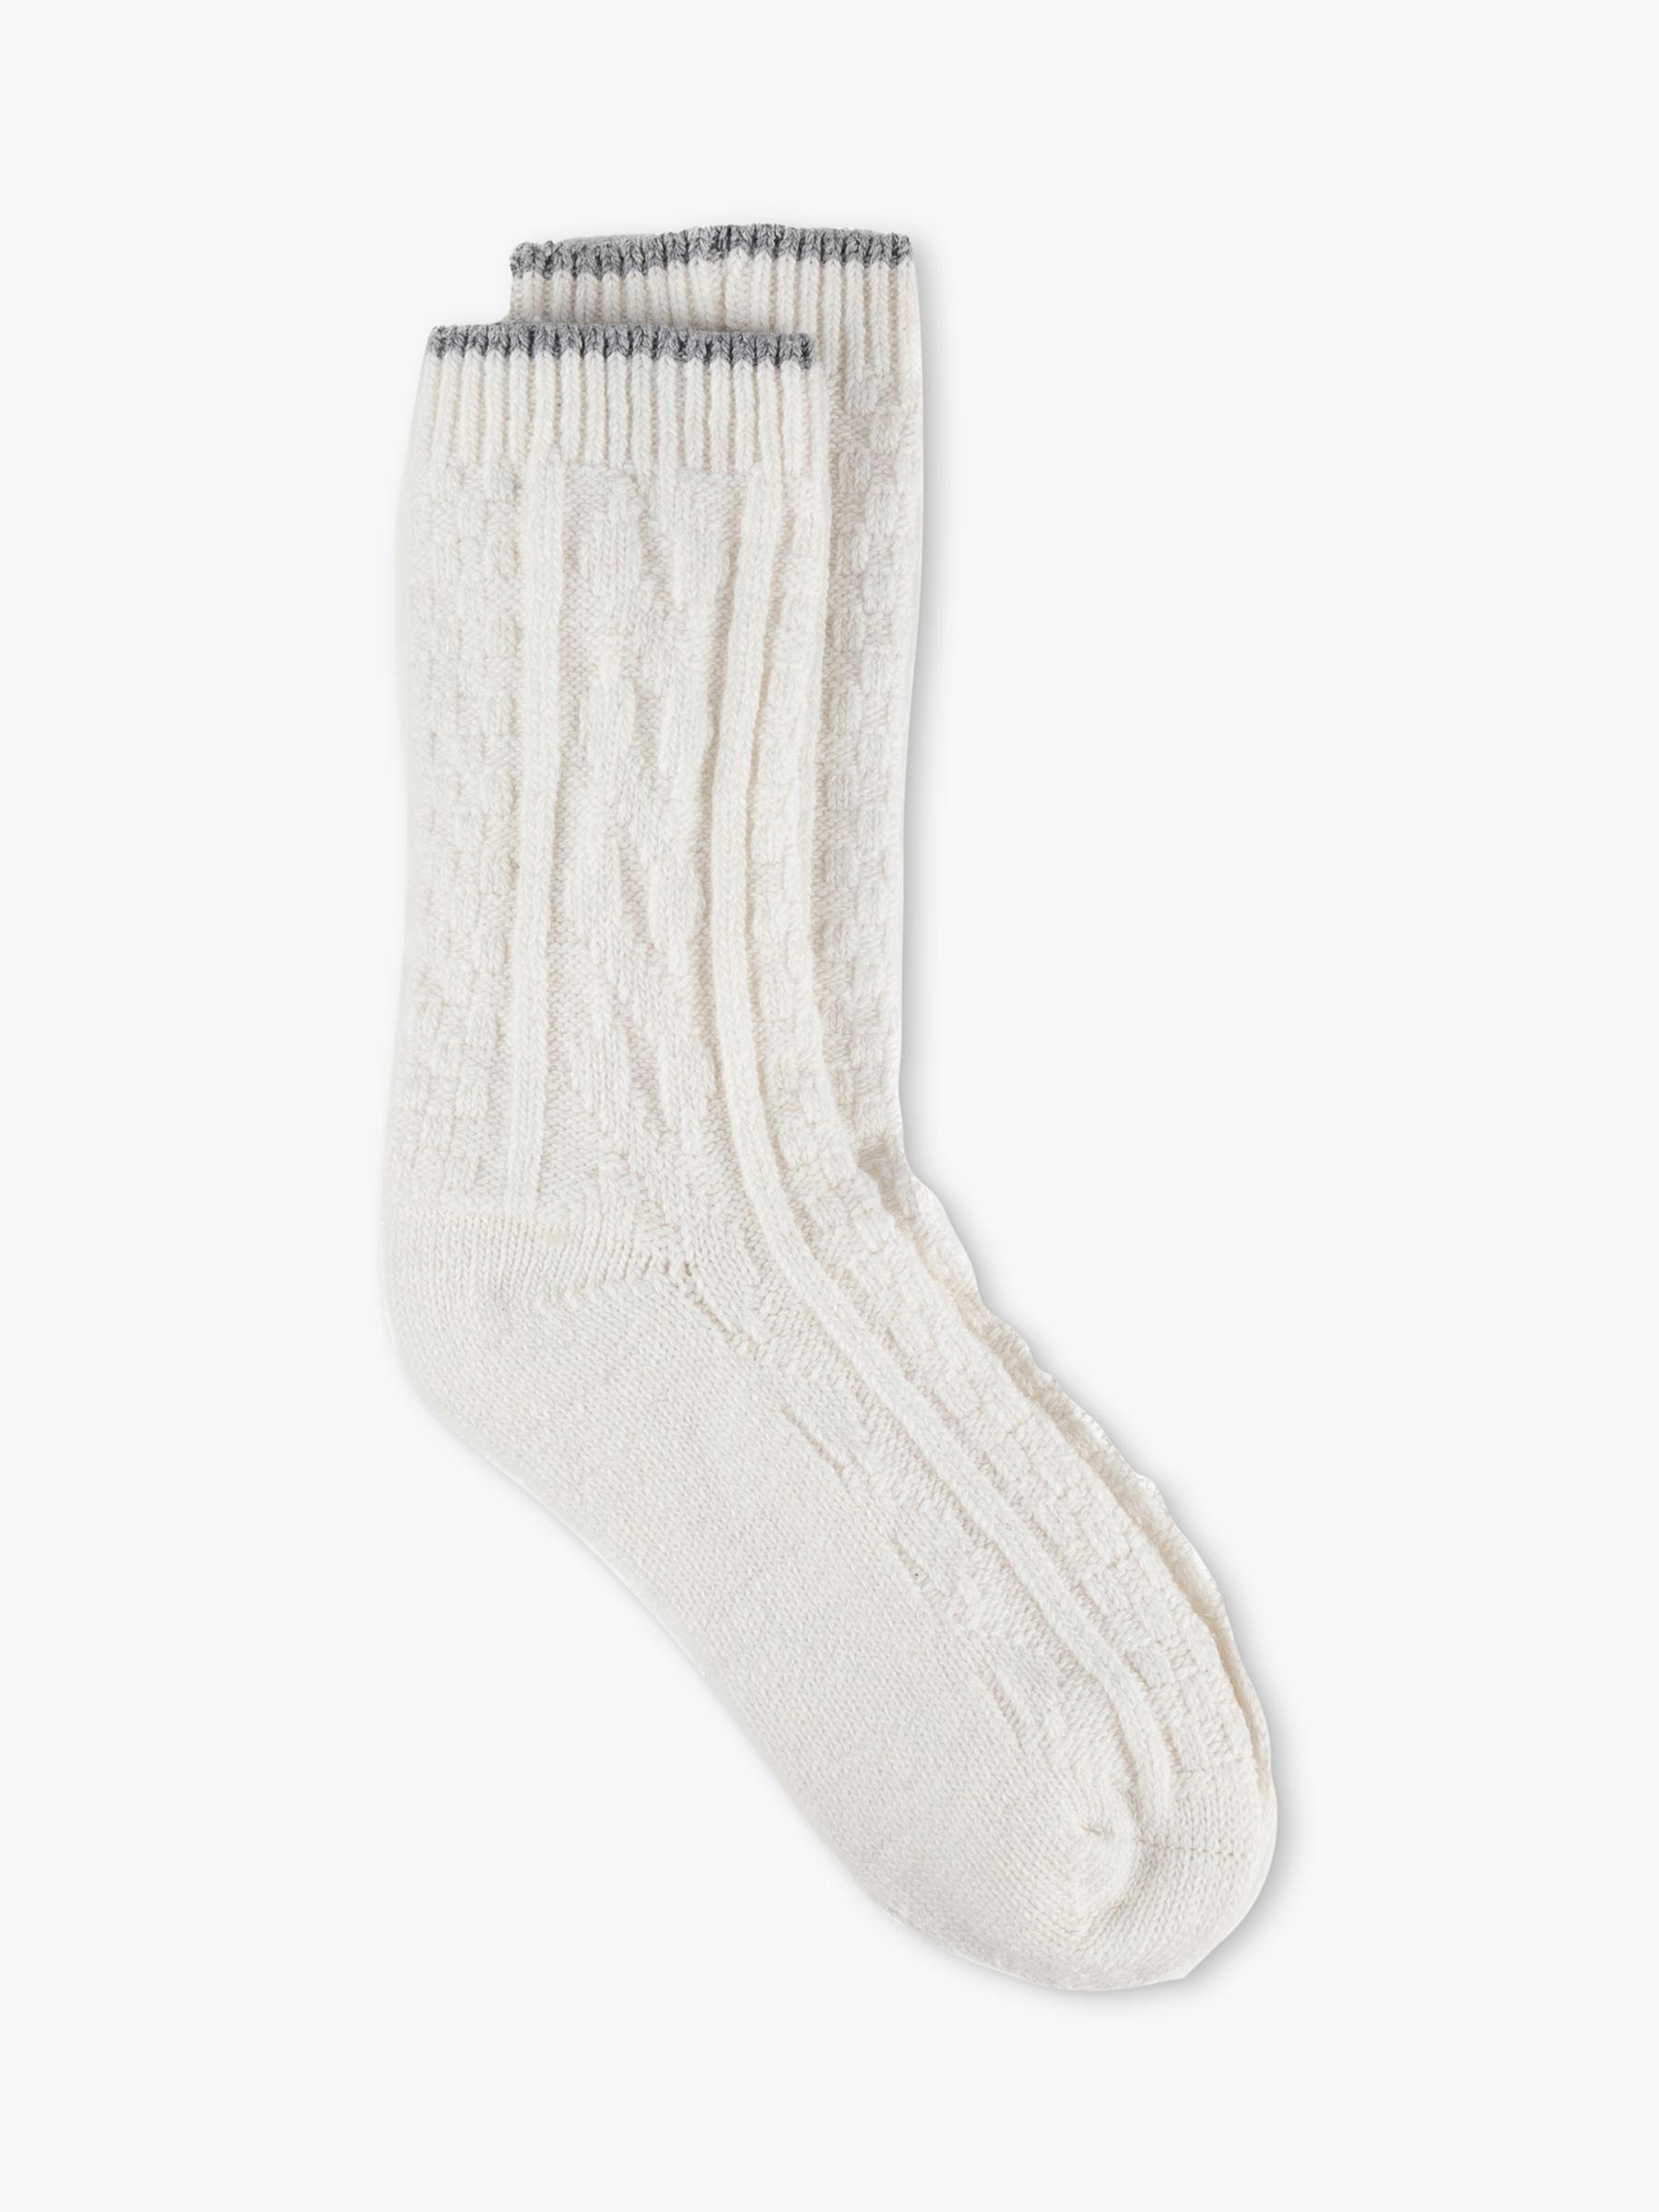 Slouch Socks - Cream